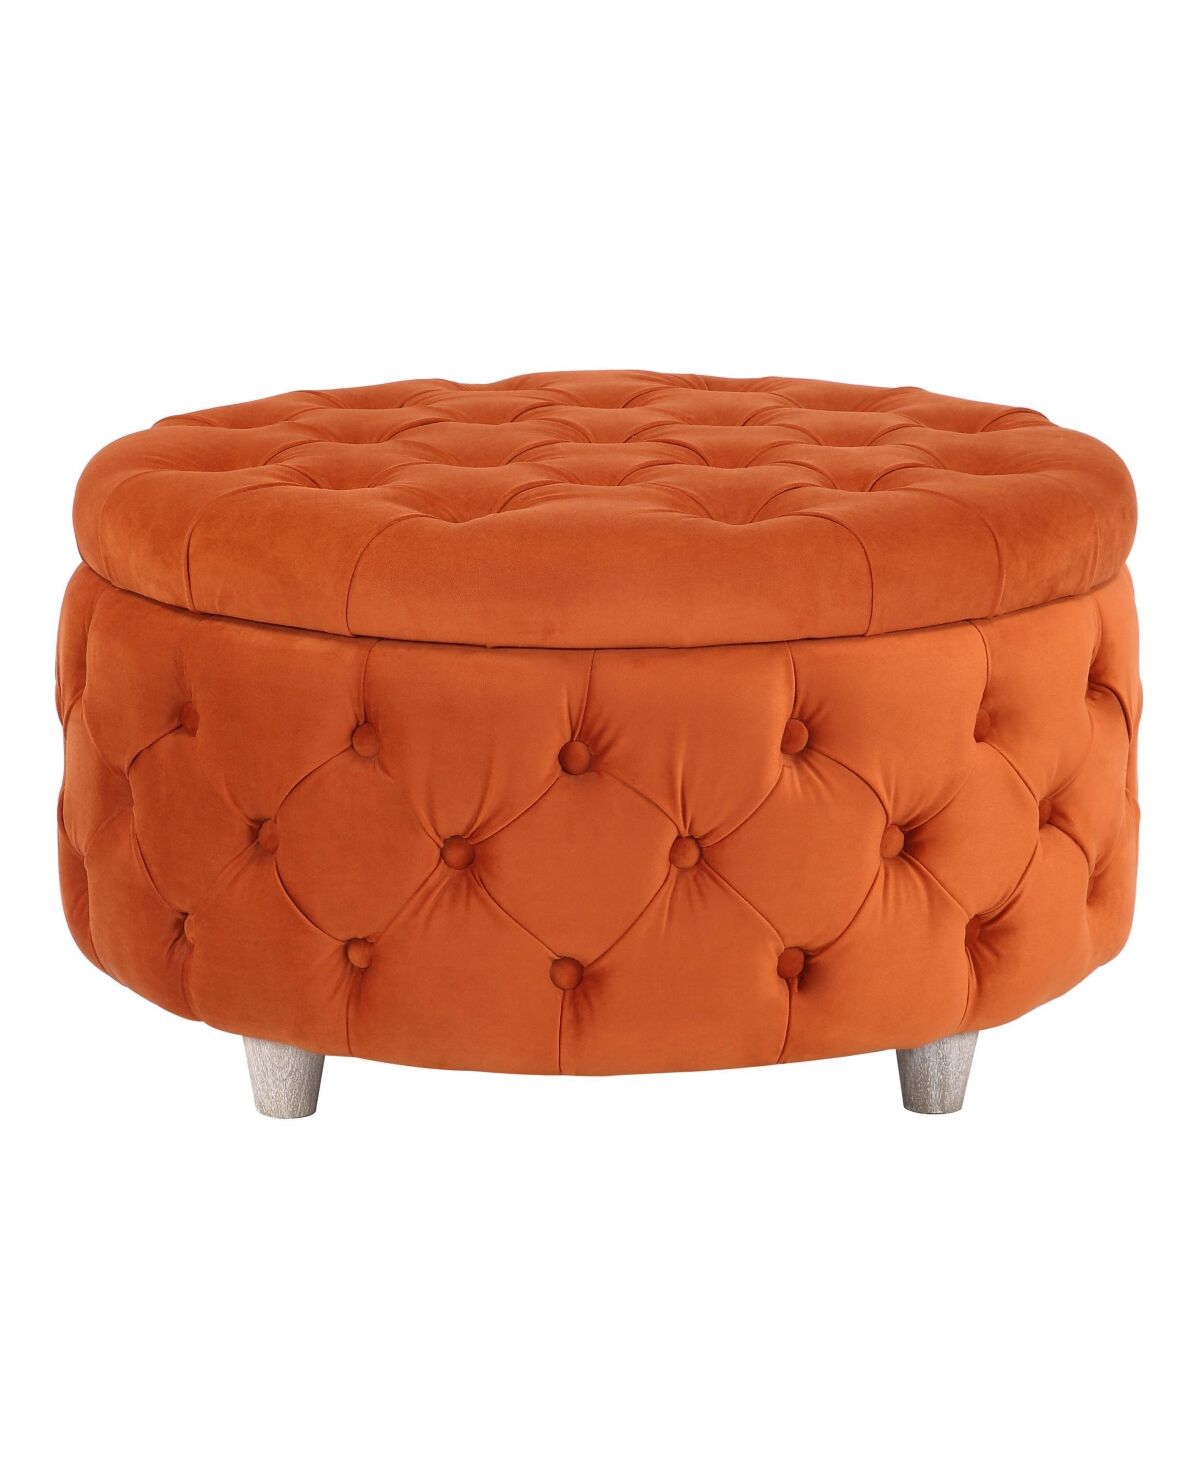 Westintrends Round Velvet Tufted Storage Ottoman for Living Room Bedroom - Velvet Orange